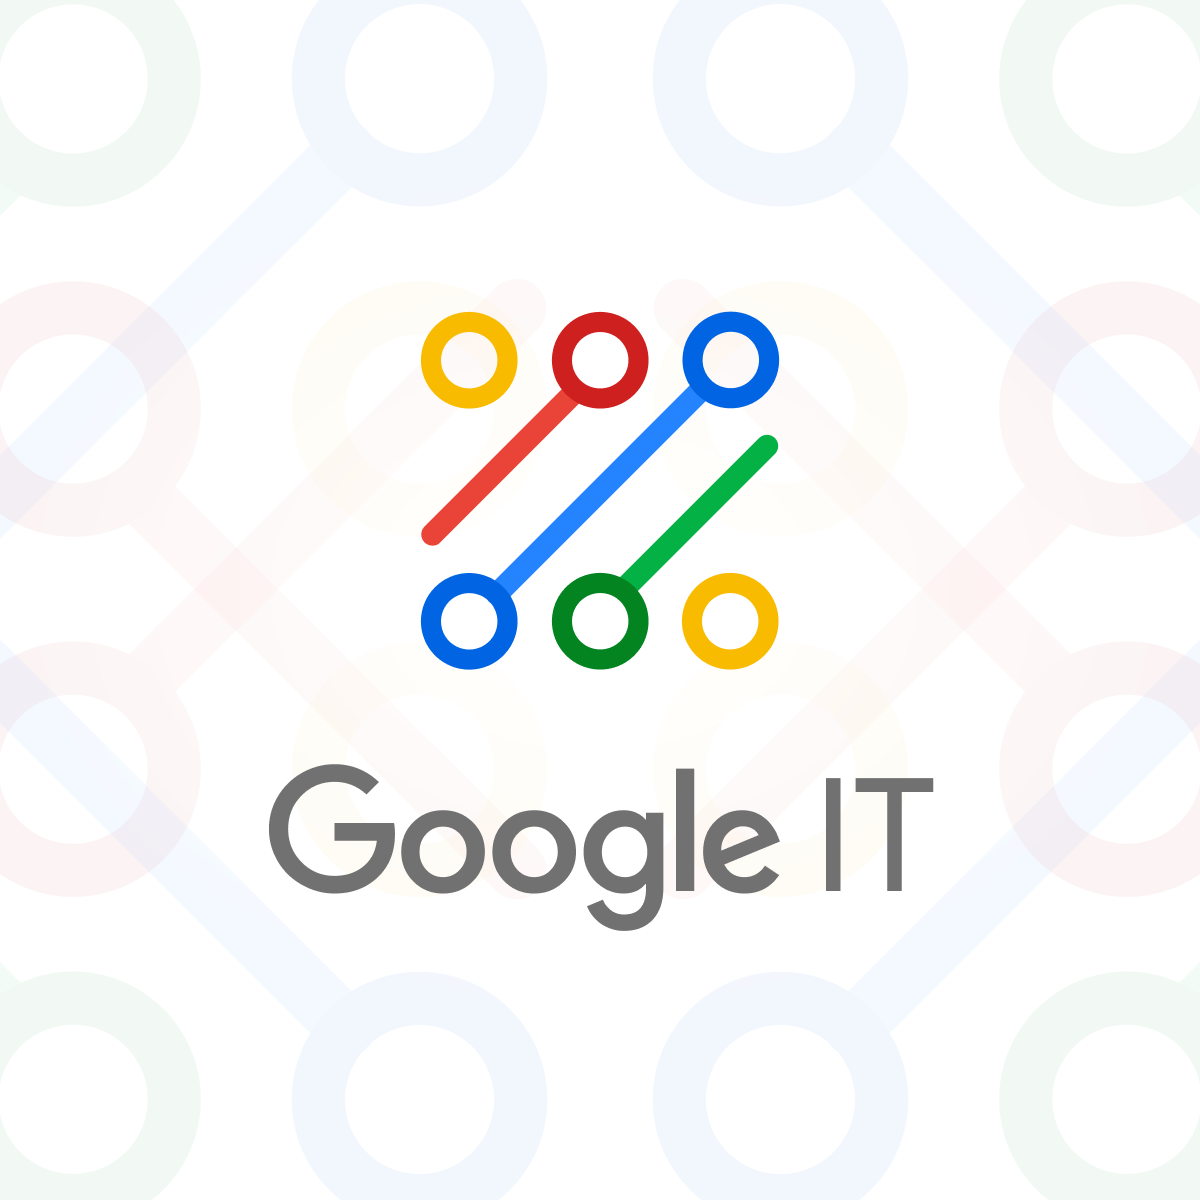 Google IT logo image